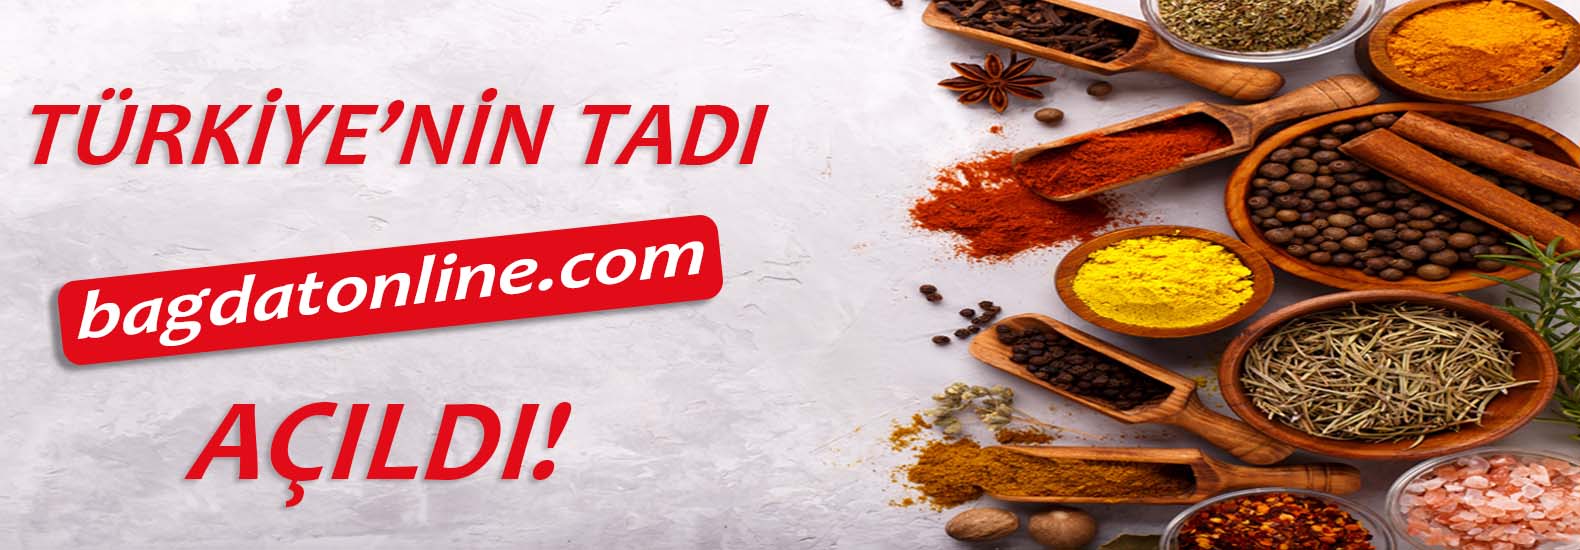 Türkiye'nin Tadı bagdatonline.com Açıldı!